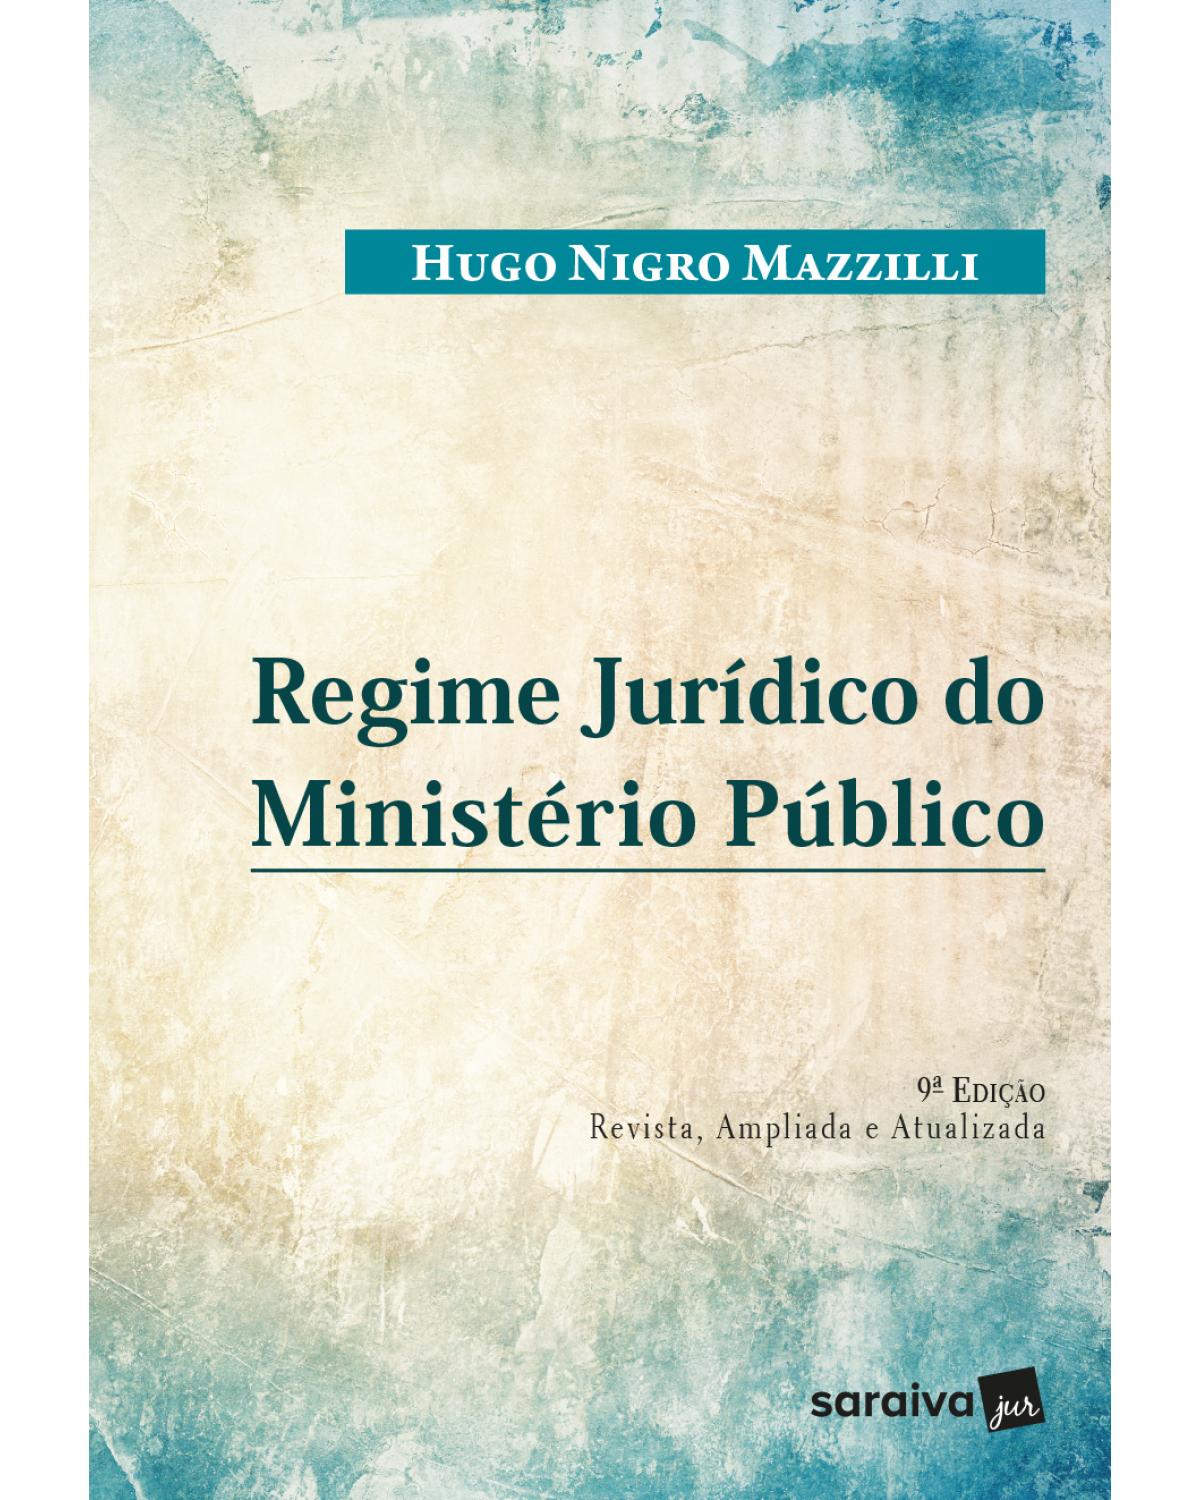 Regime jurídico do Ministério Público - 9ª Edição | 2018